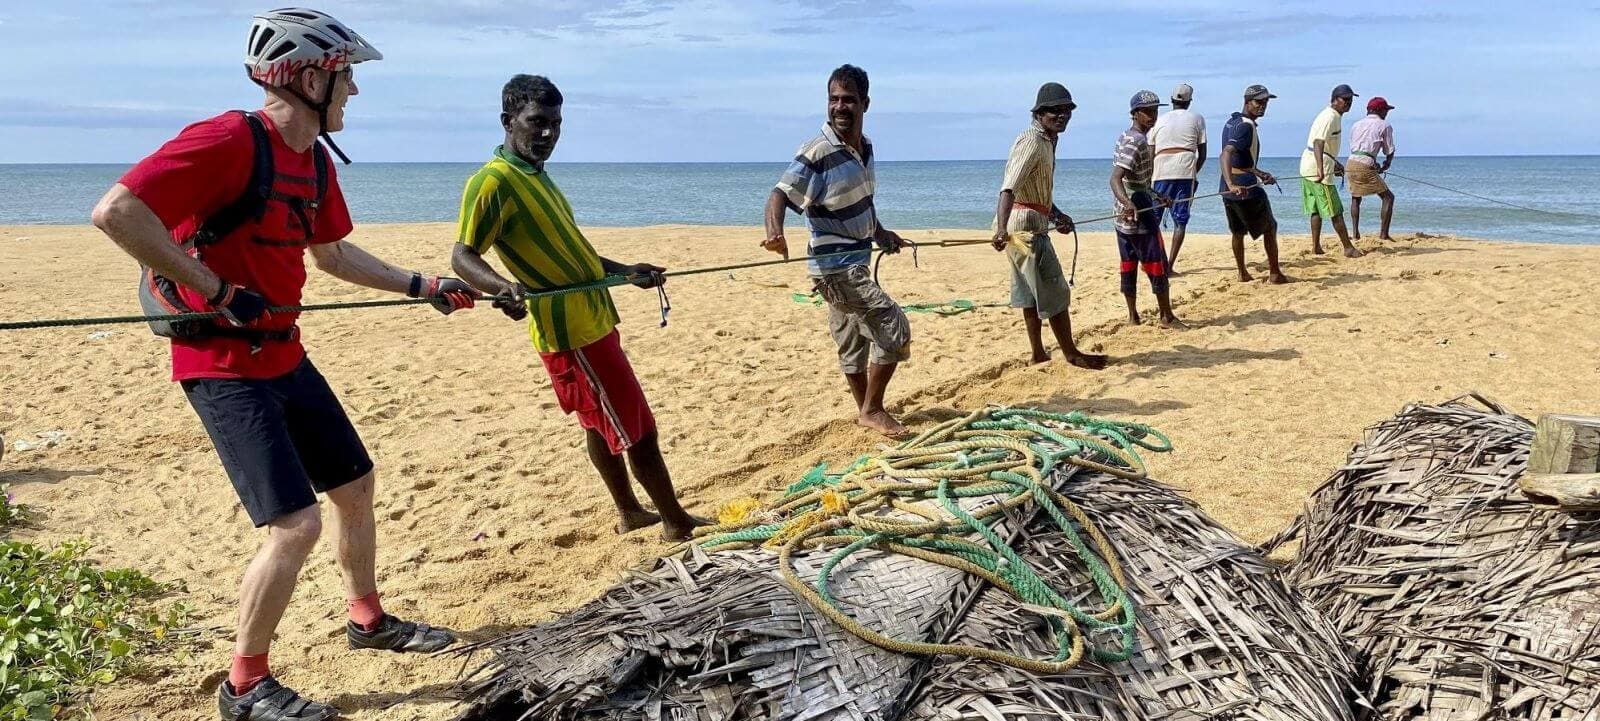 Фотография рыбалки сетью на пляже Тринкомали в Шри-Ланке.